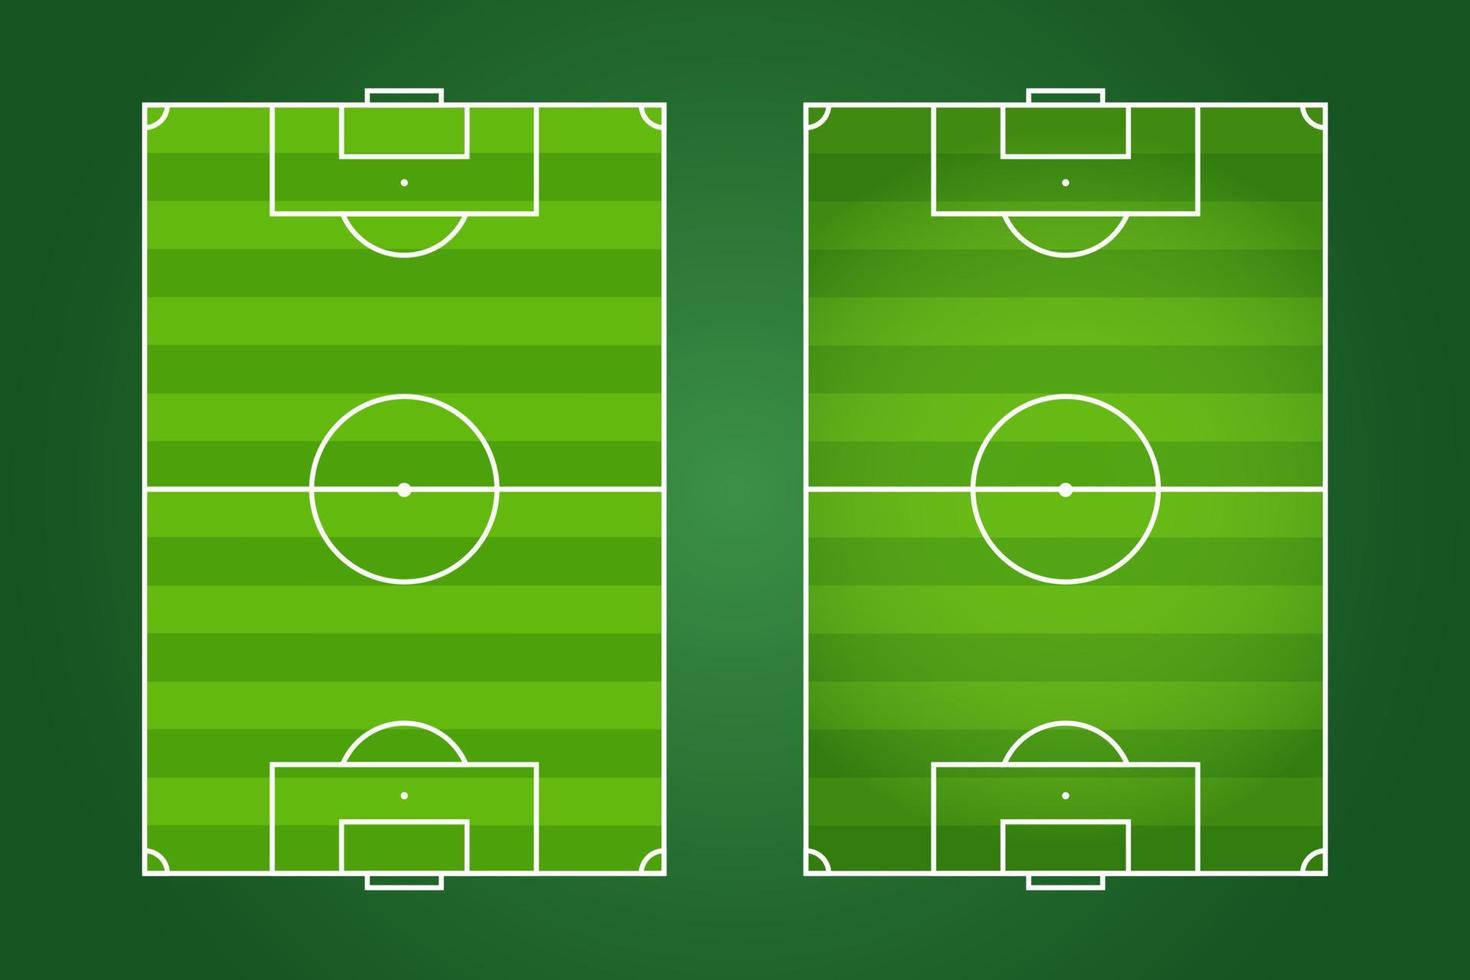 diseño plano de campo de fútbol, ilustración gráfica de campo de fútbol, vector de cancha de fútbol y diseño.